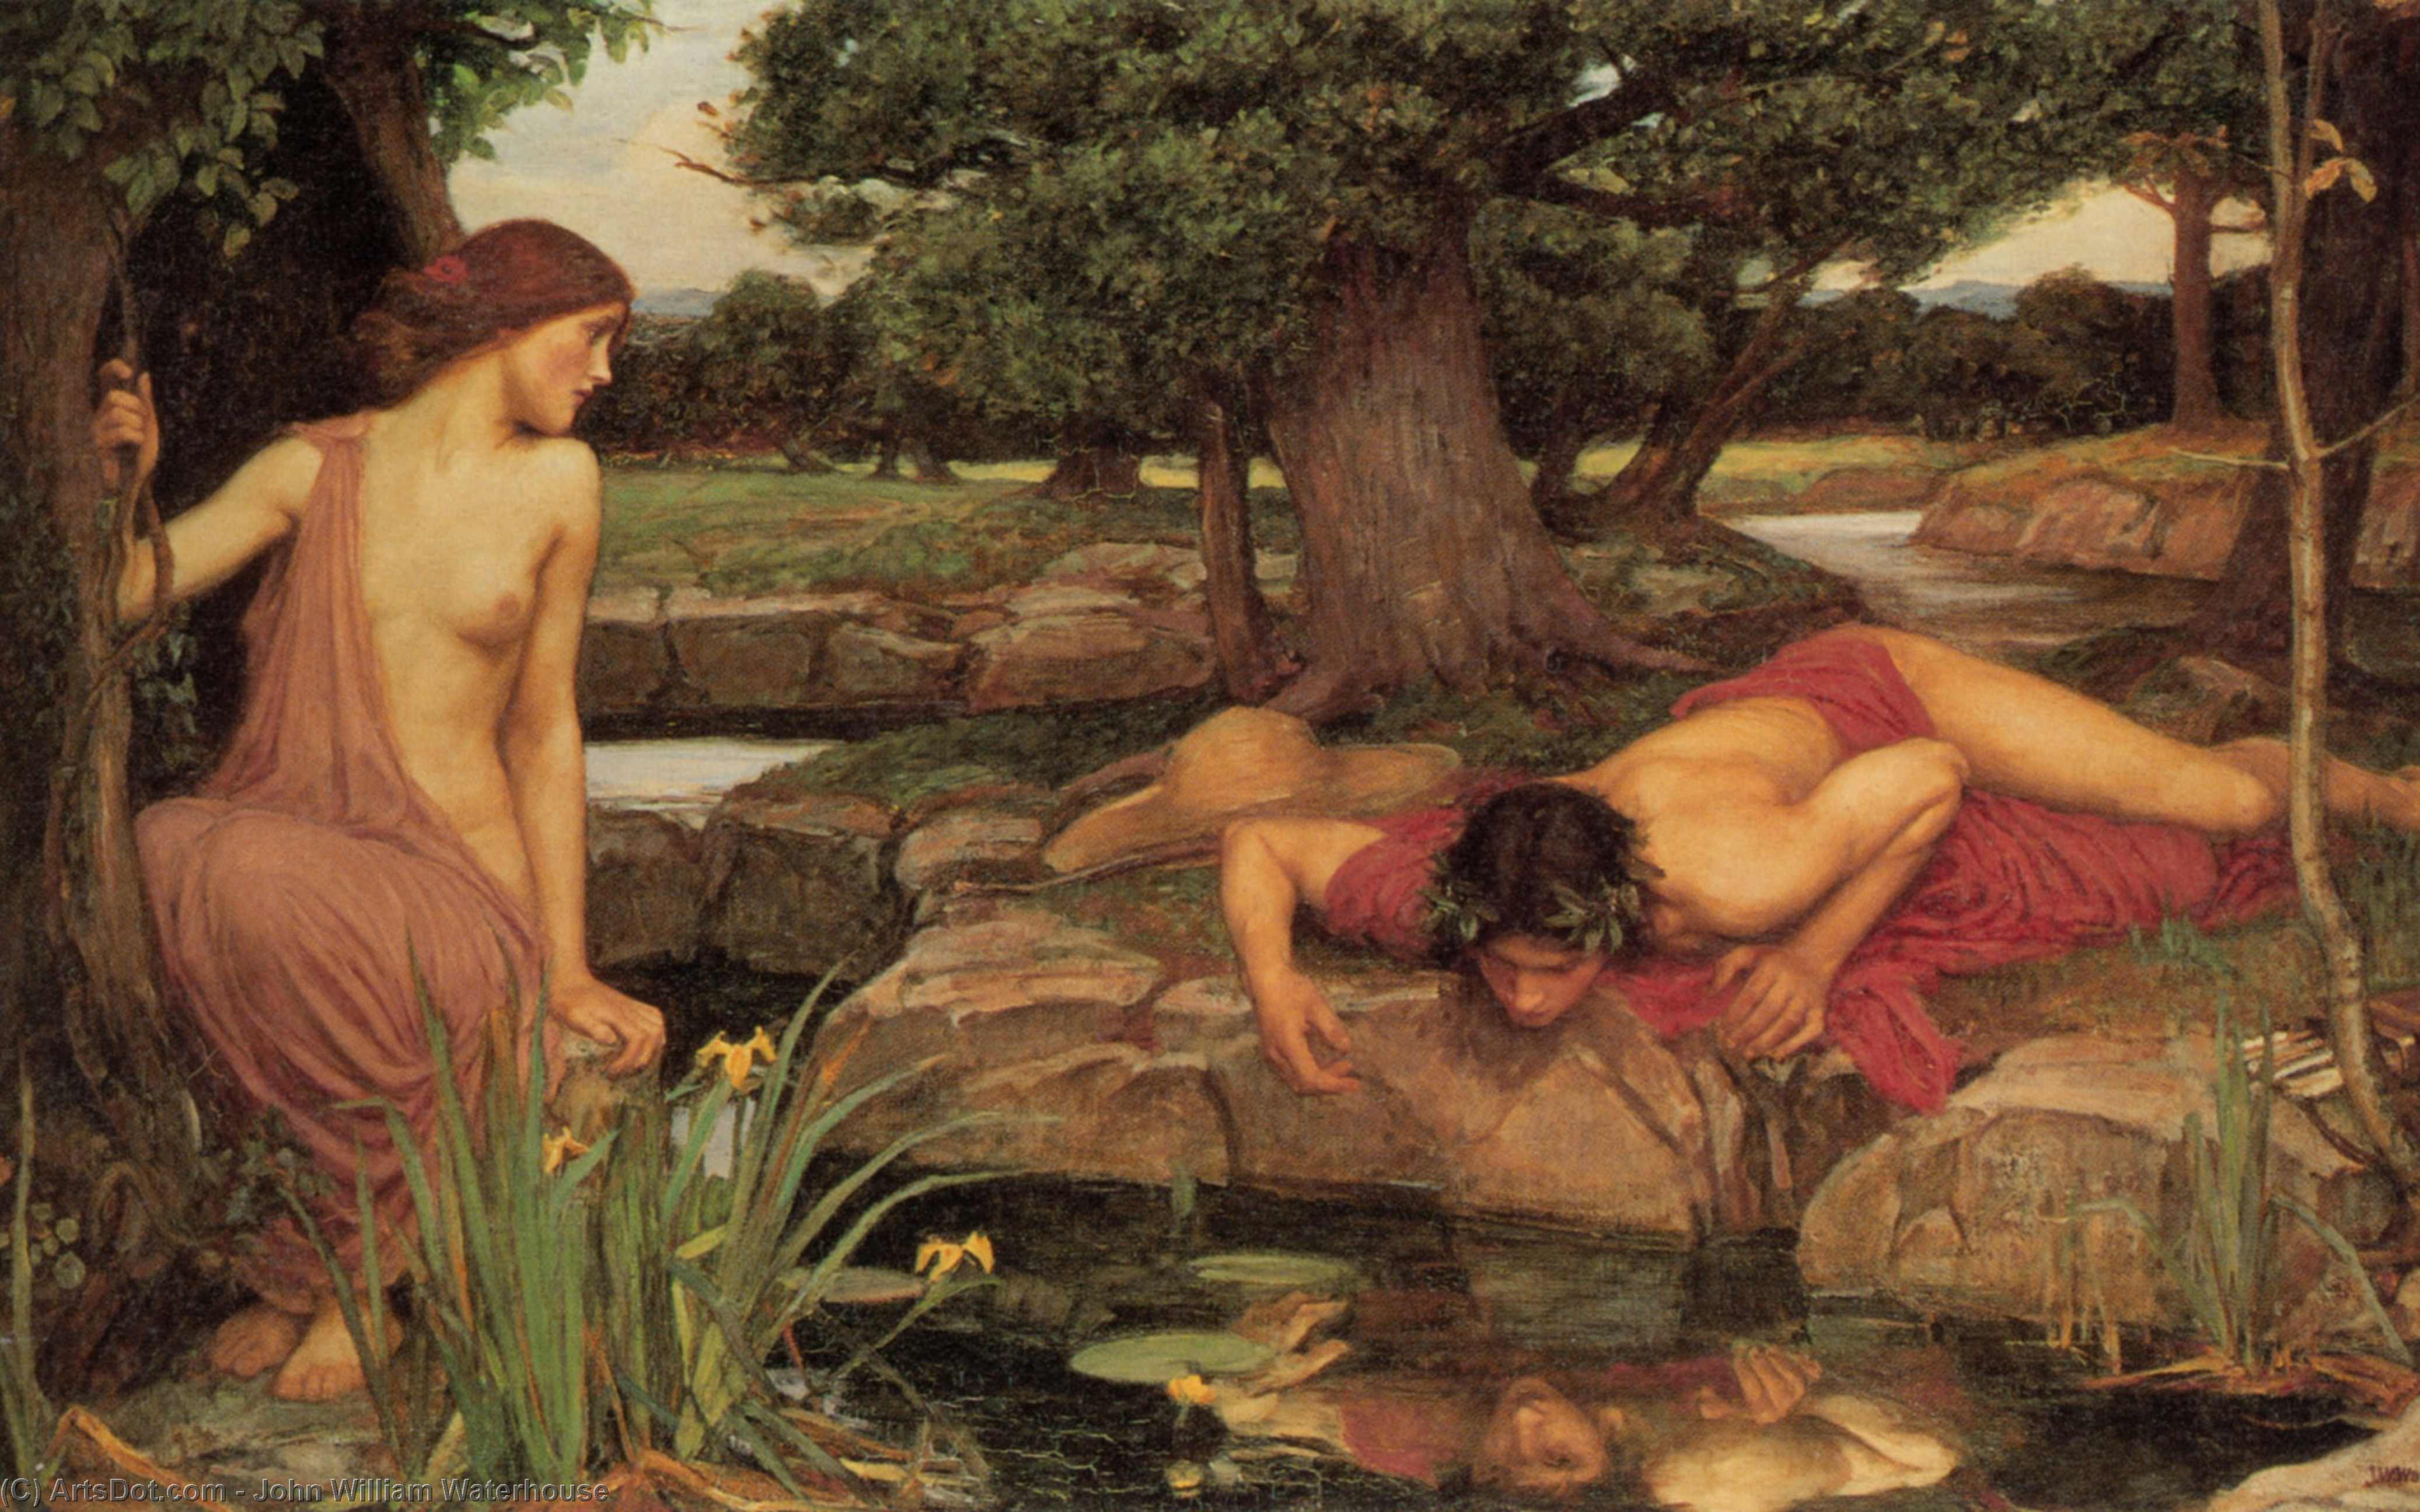 Compre Museu De Reproduções De Arte Eco e Narciso, 1903 por John William Waterhouse (1849-1917, Italy) | ArtsDot.com